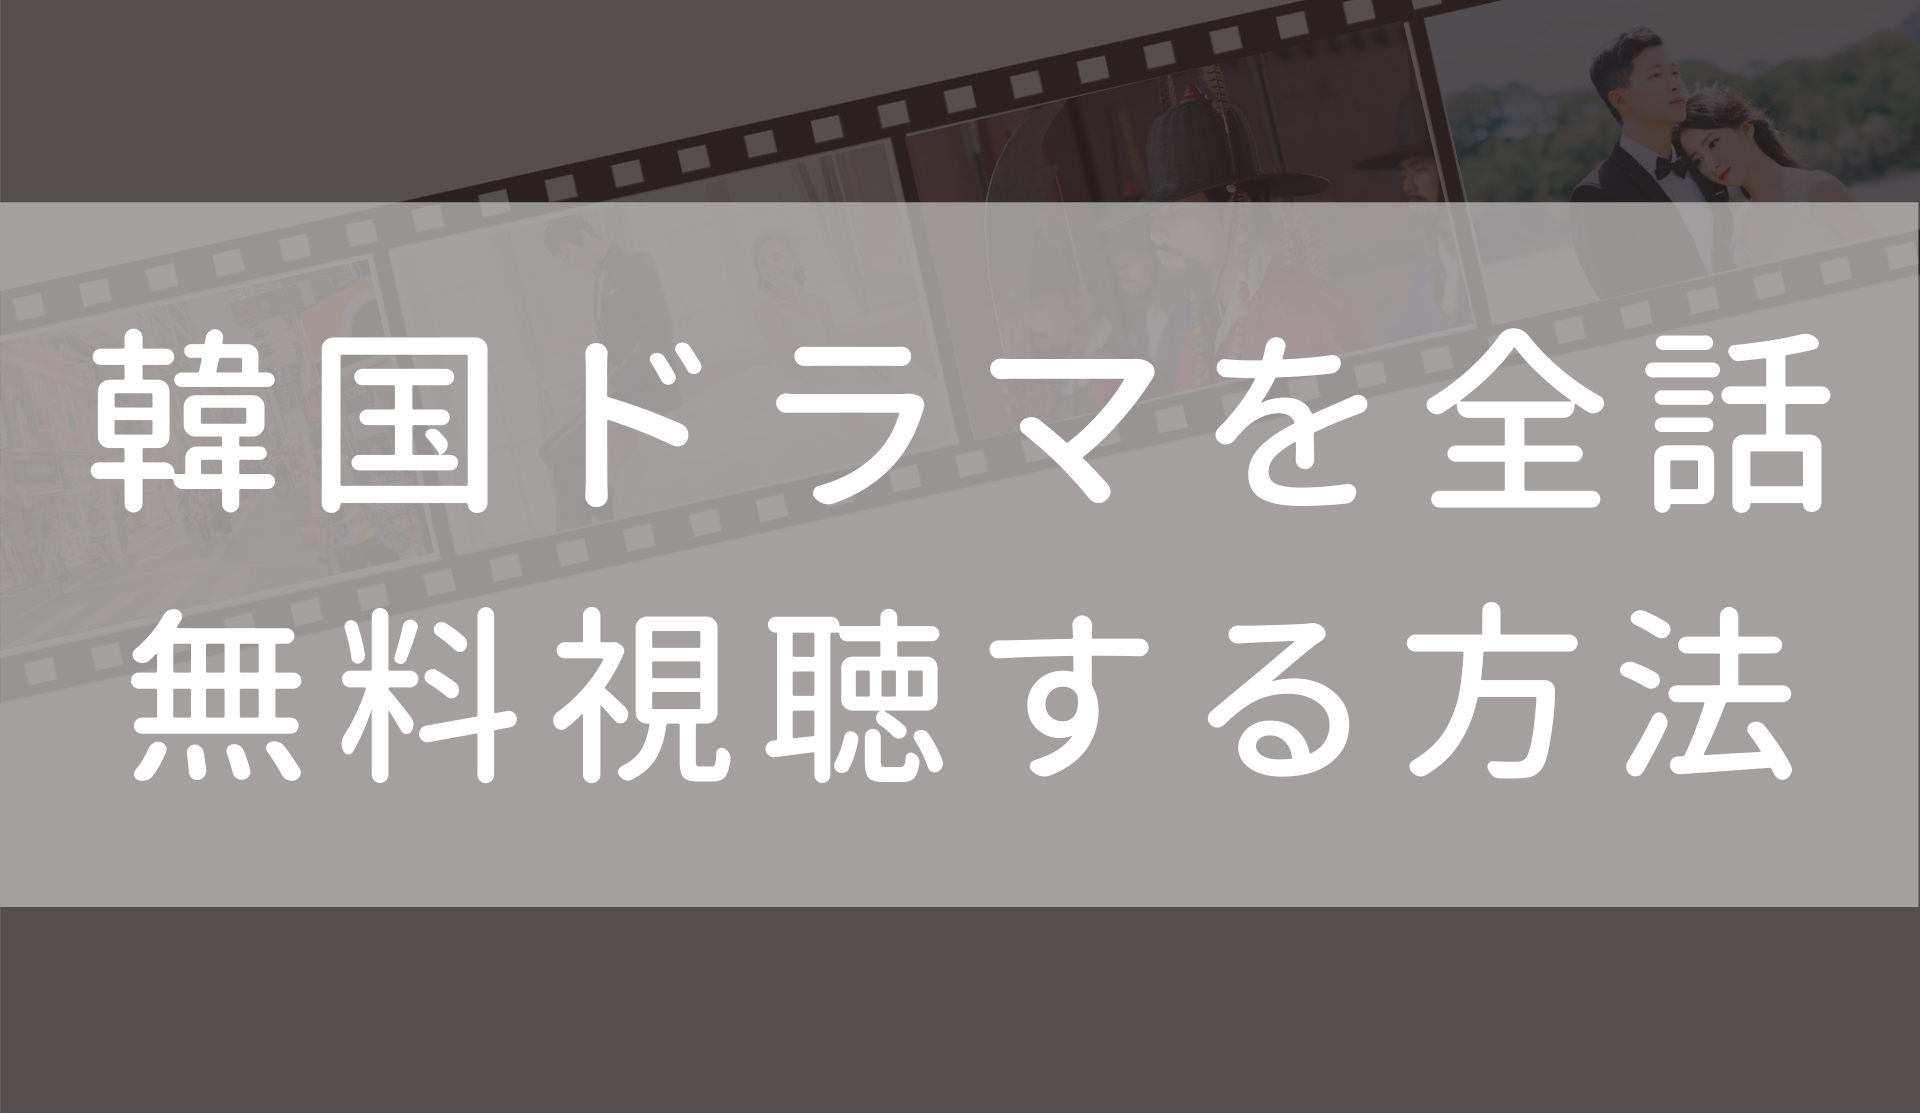 モンスター その愛と復讐 日本語字幕 吹き替え の無料動画 1話 最終回まで全話観る方法も Fuku Hack Times